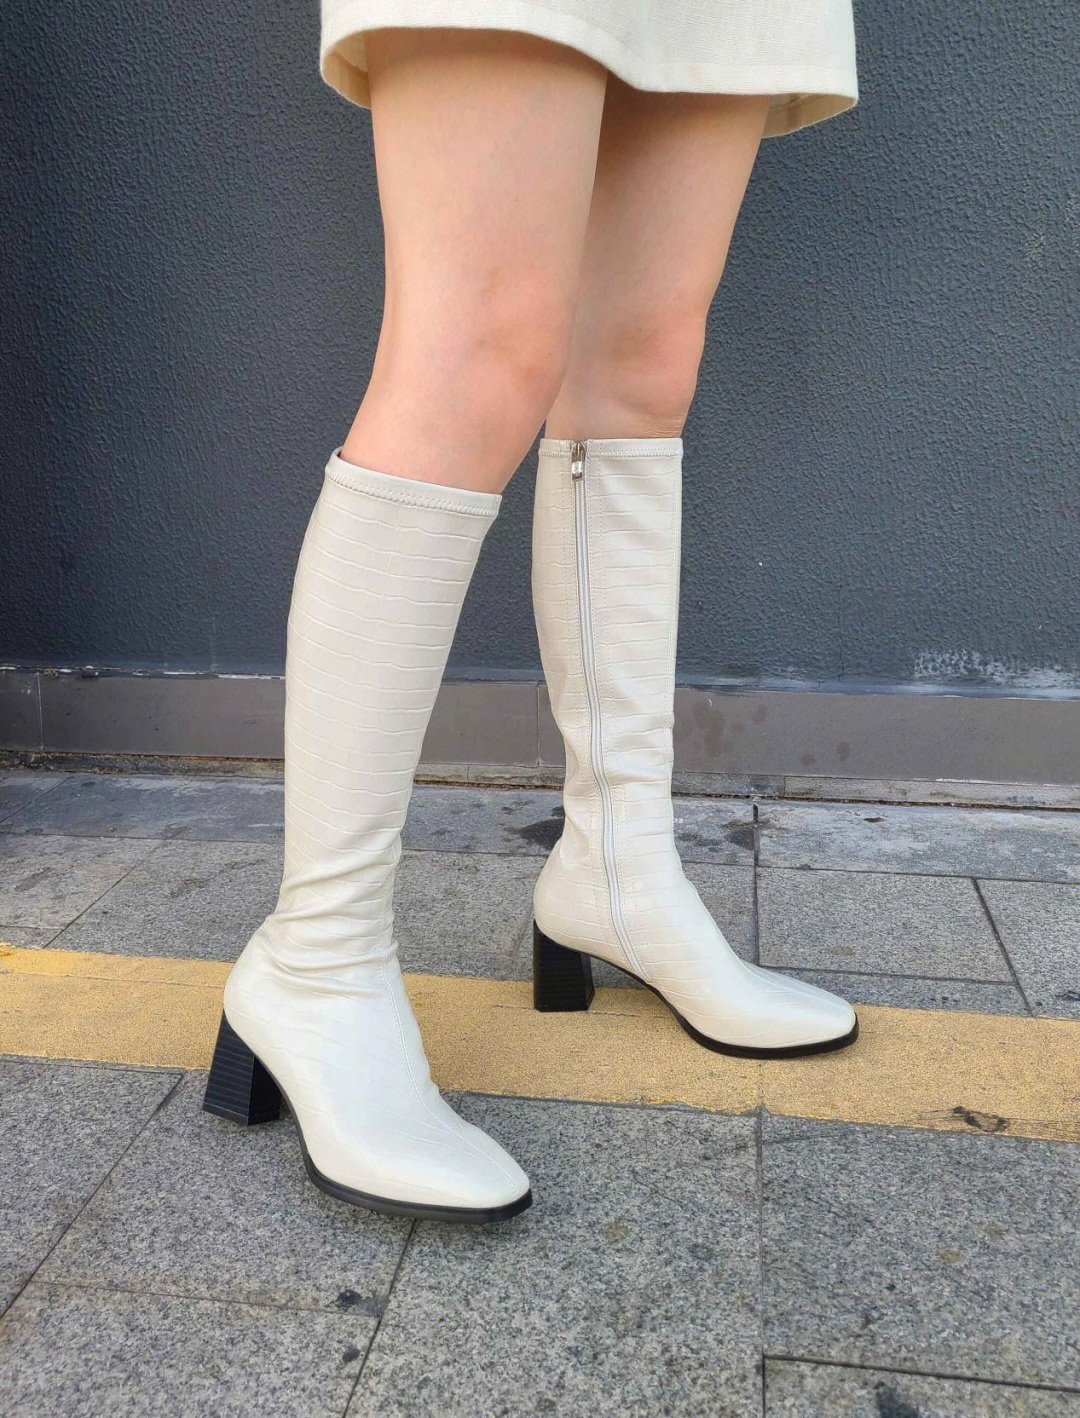 小仙女都爱的白色长靴实在太好看啦